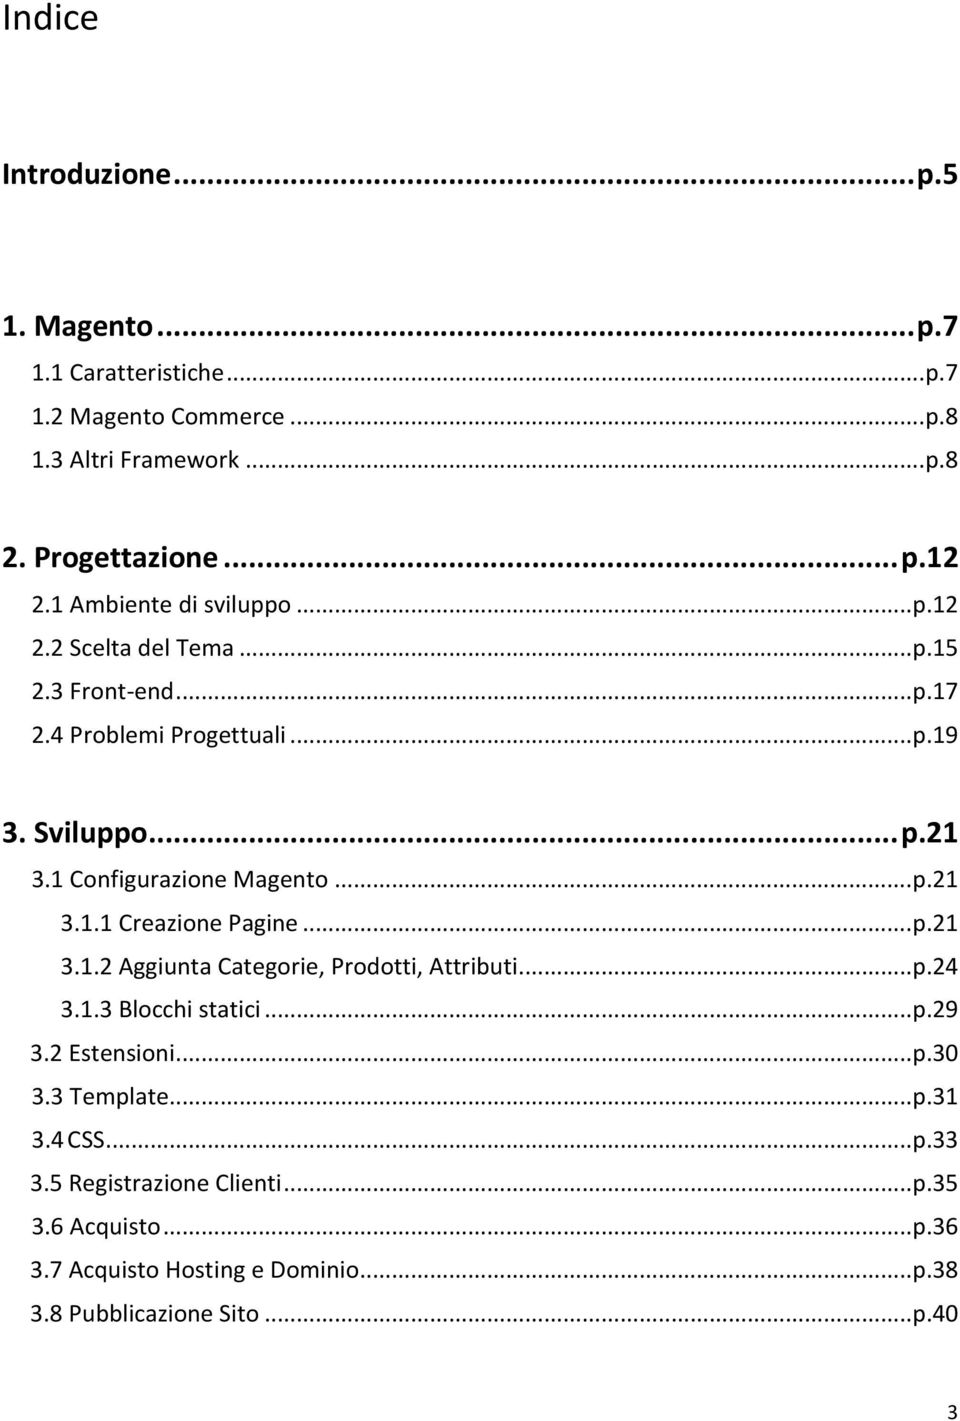 1 Configurazione Magento... p.21 3.1.1 Creazione Pagine... p.21 3.1.2 Aggiunta Categorie, Prodotti, Attributi... p.24 3.1.3 Blocchi statici... p.29 3.